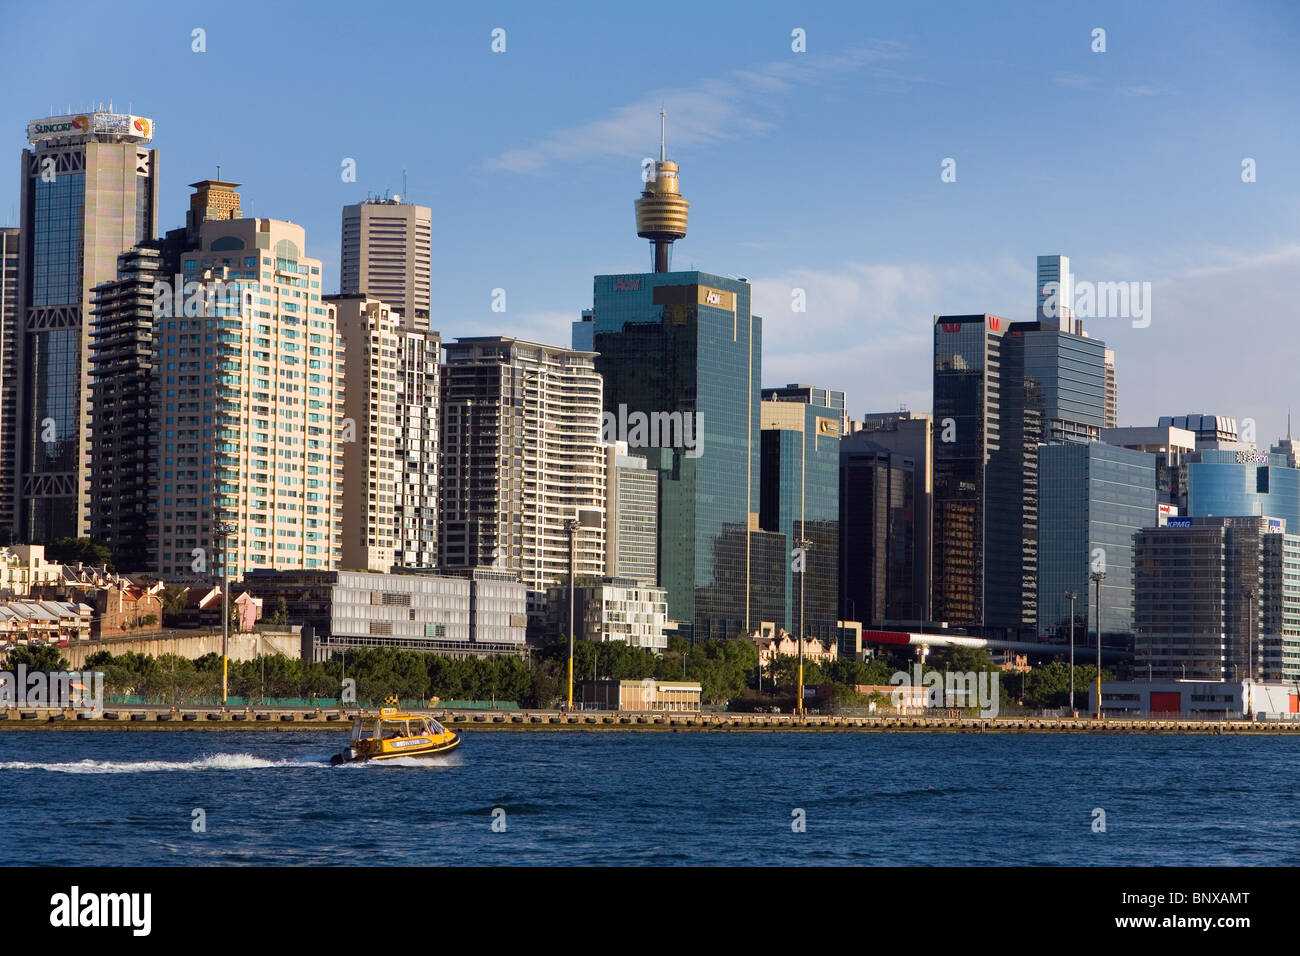 Hochhäuser und Wohnblocks am Darling Harbour mit der Skyline der Stadt. Sydney, New South Wales, Australien Stockfoto